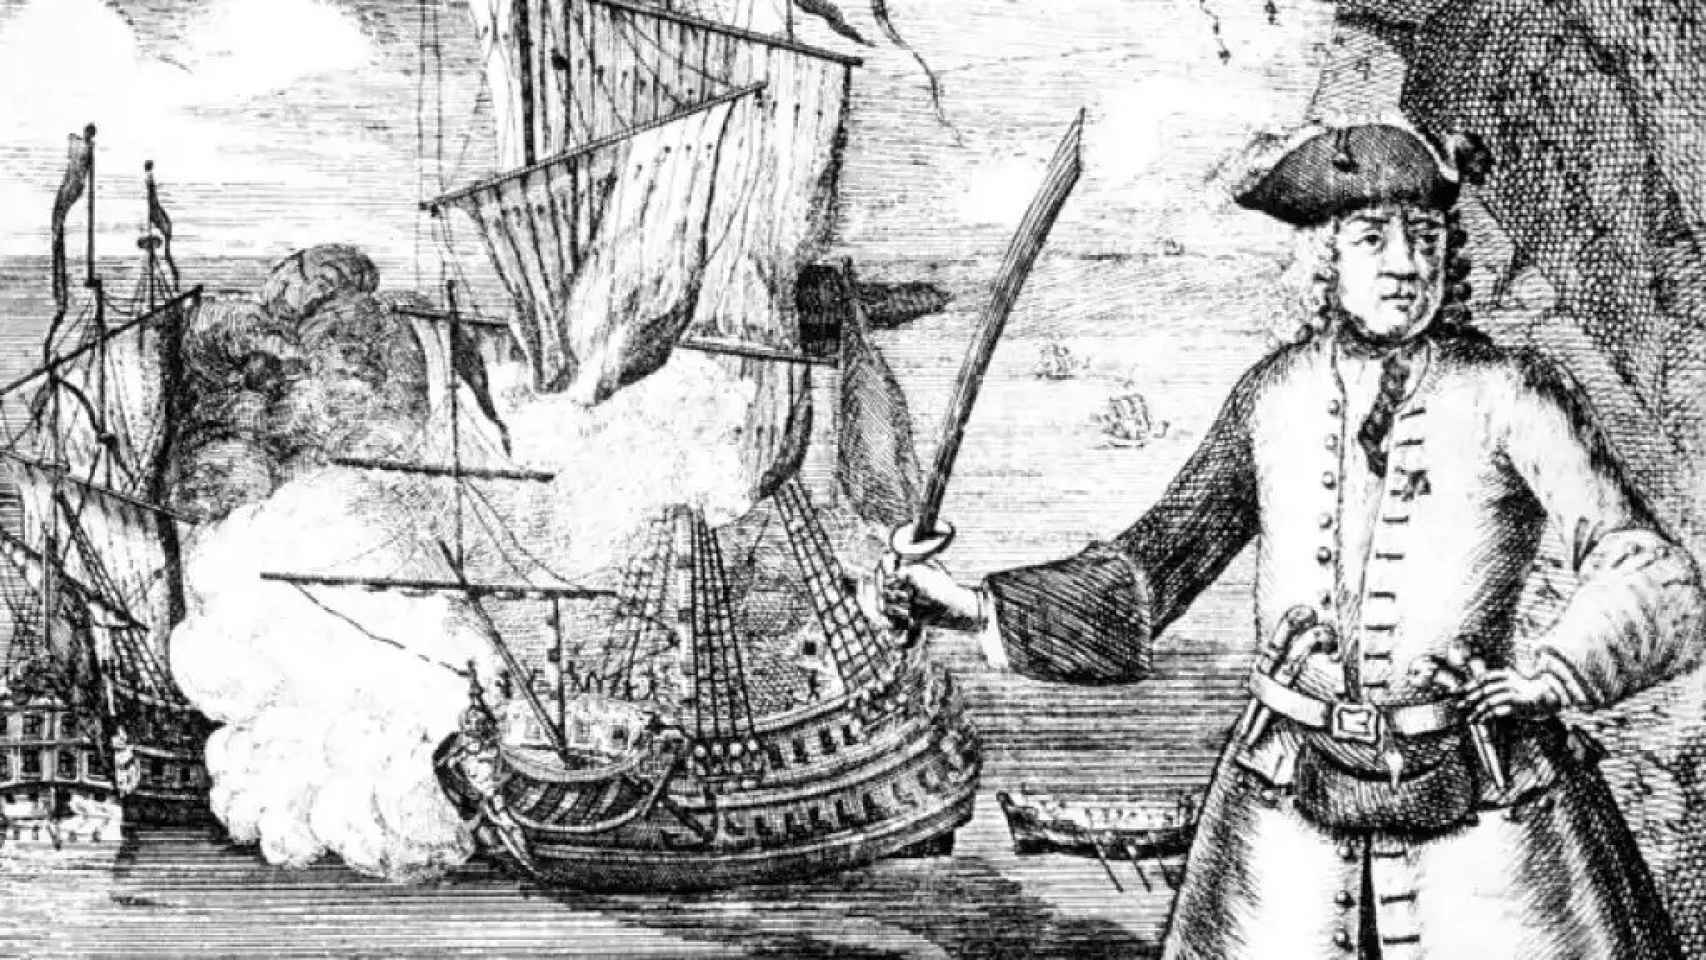 Una ilustración del siglo XVIII del pirata Henry Every.